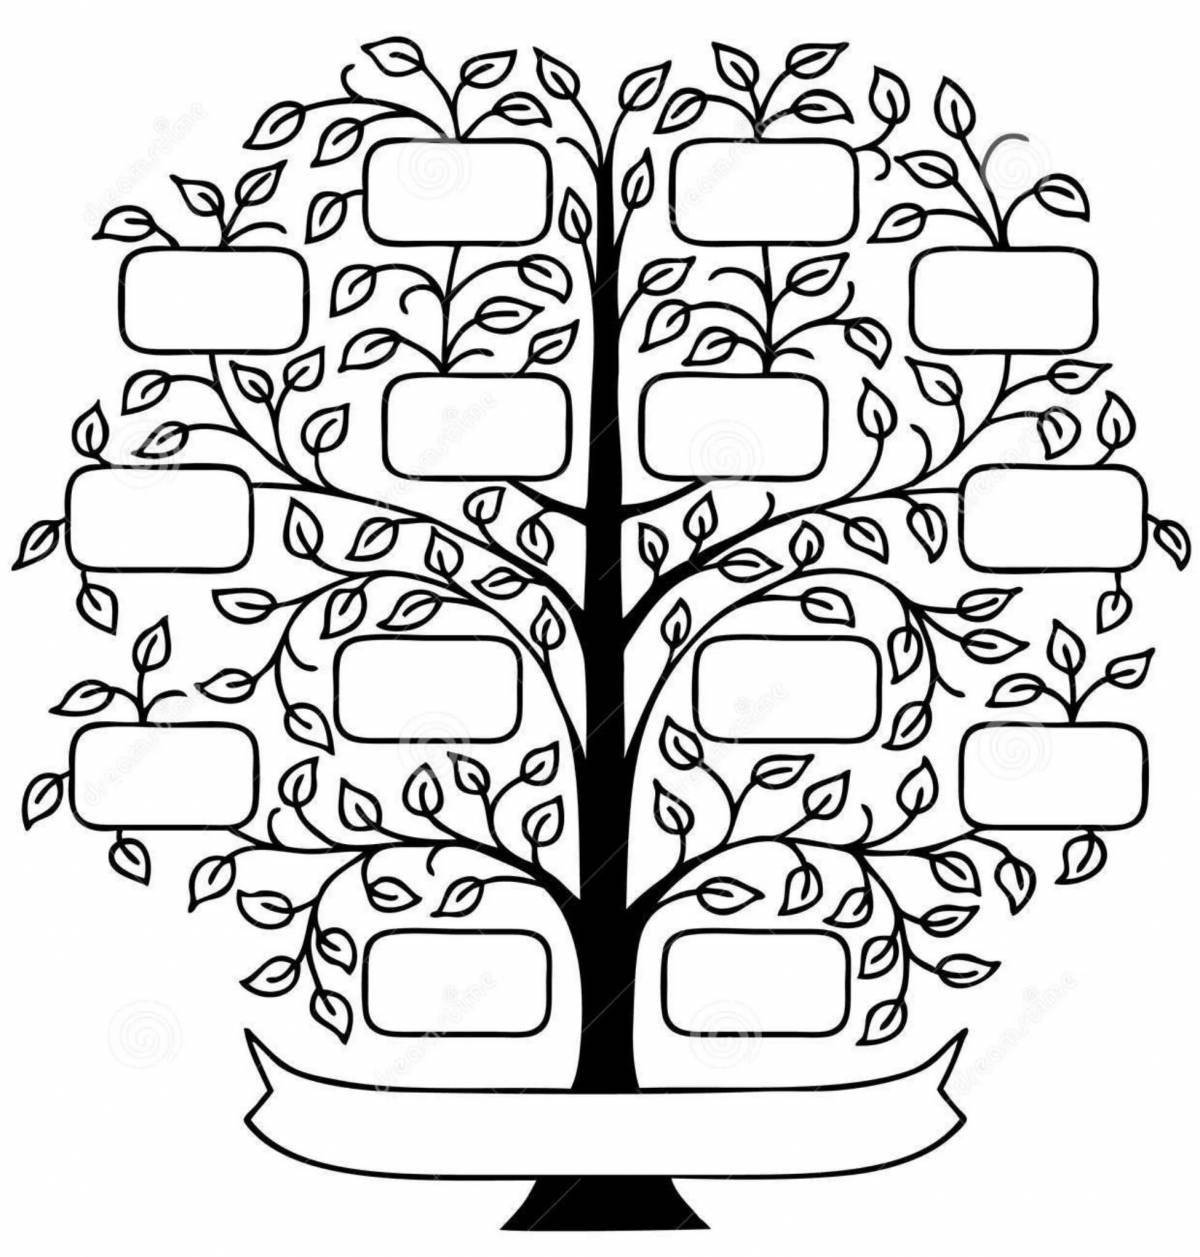 Fancy family tree template